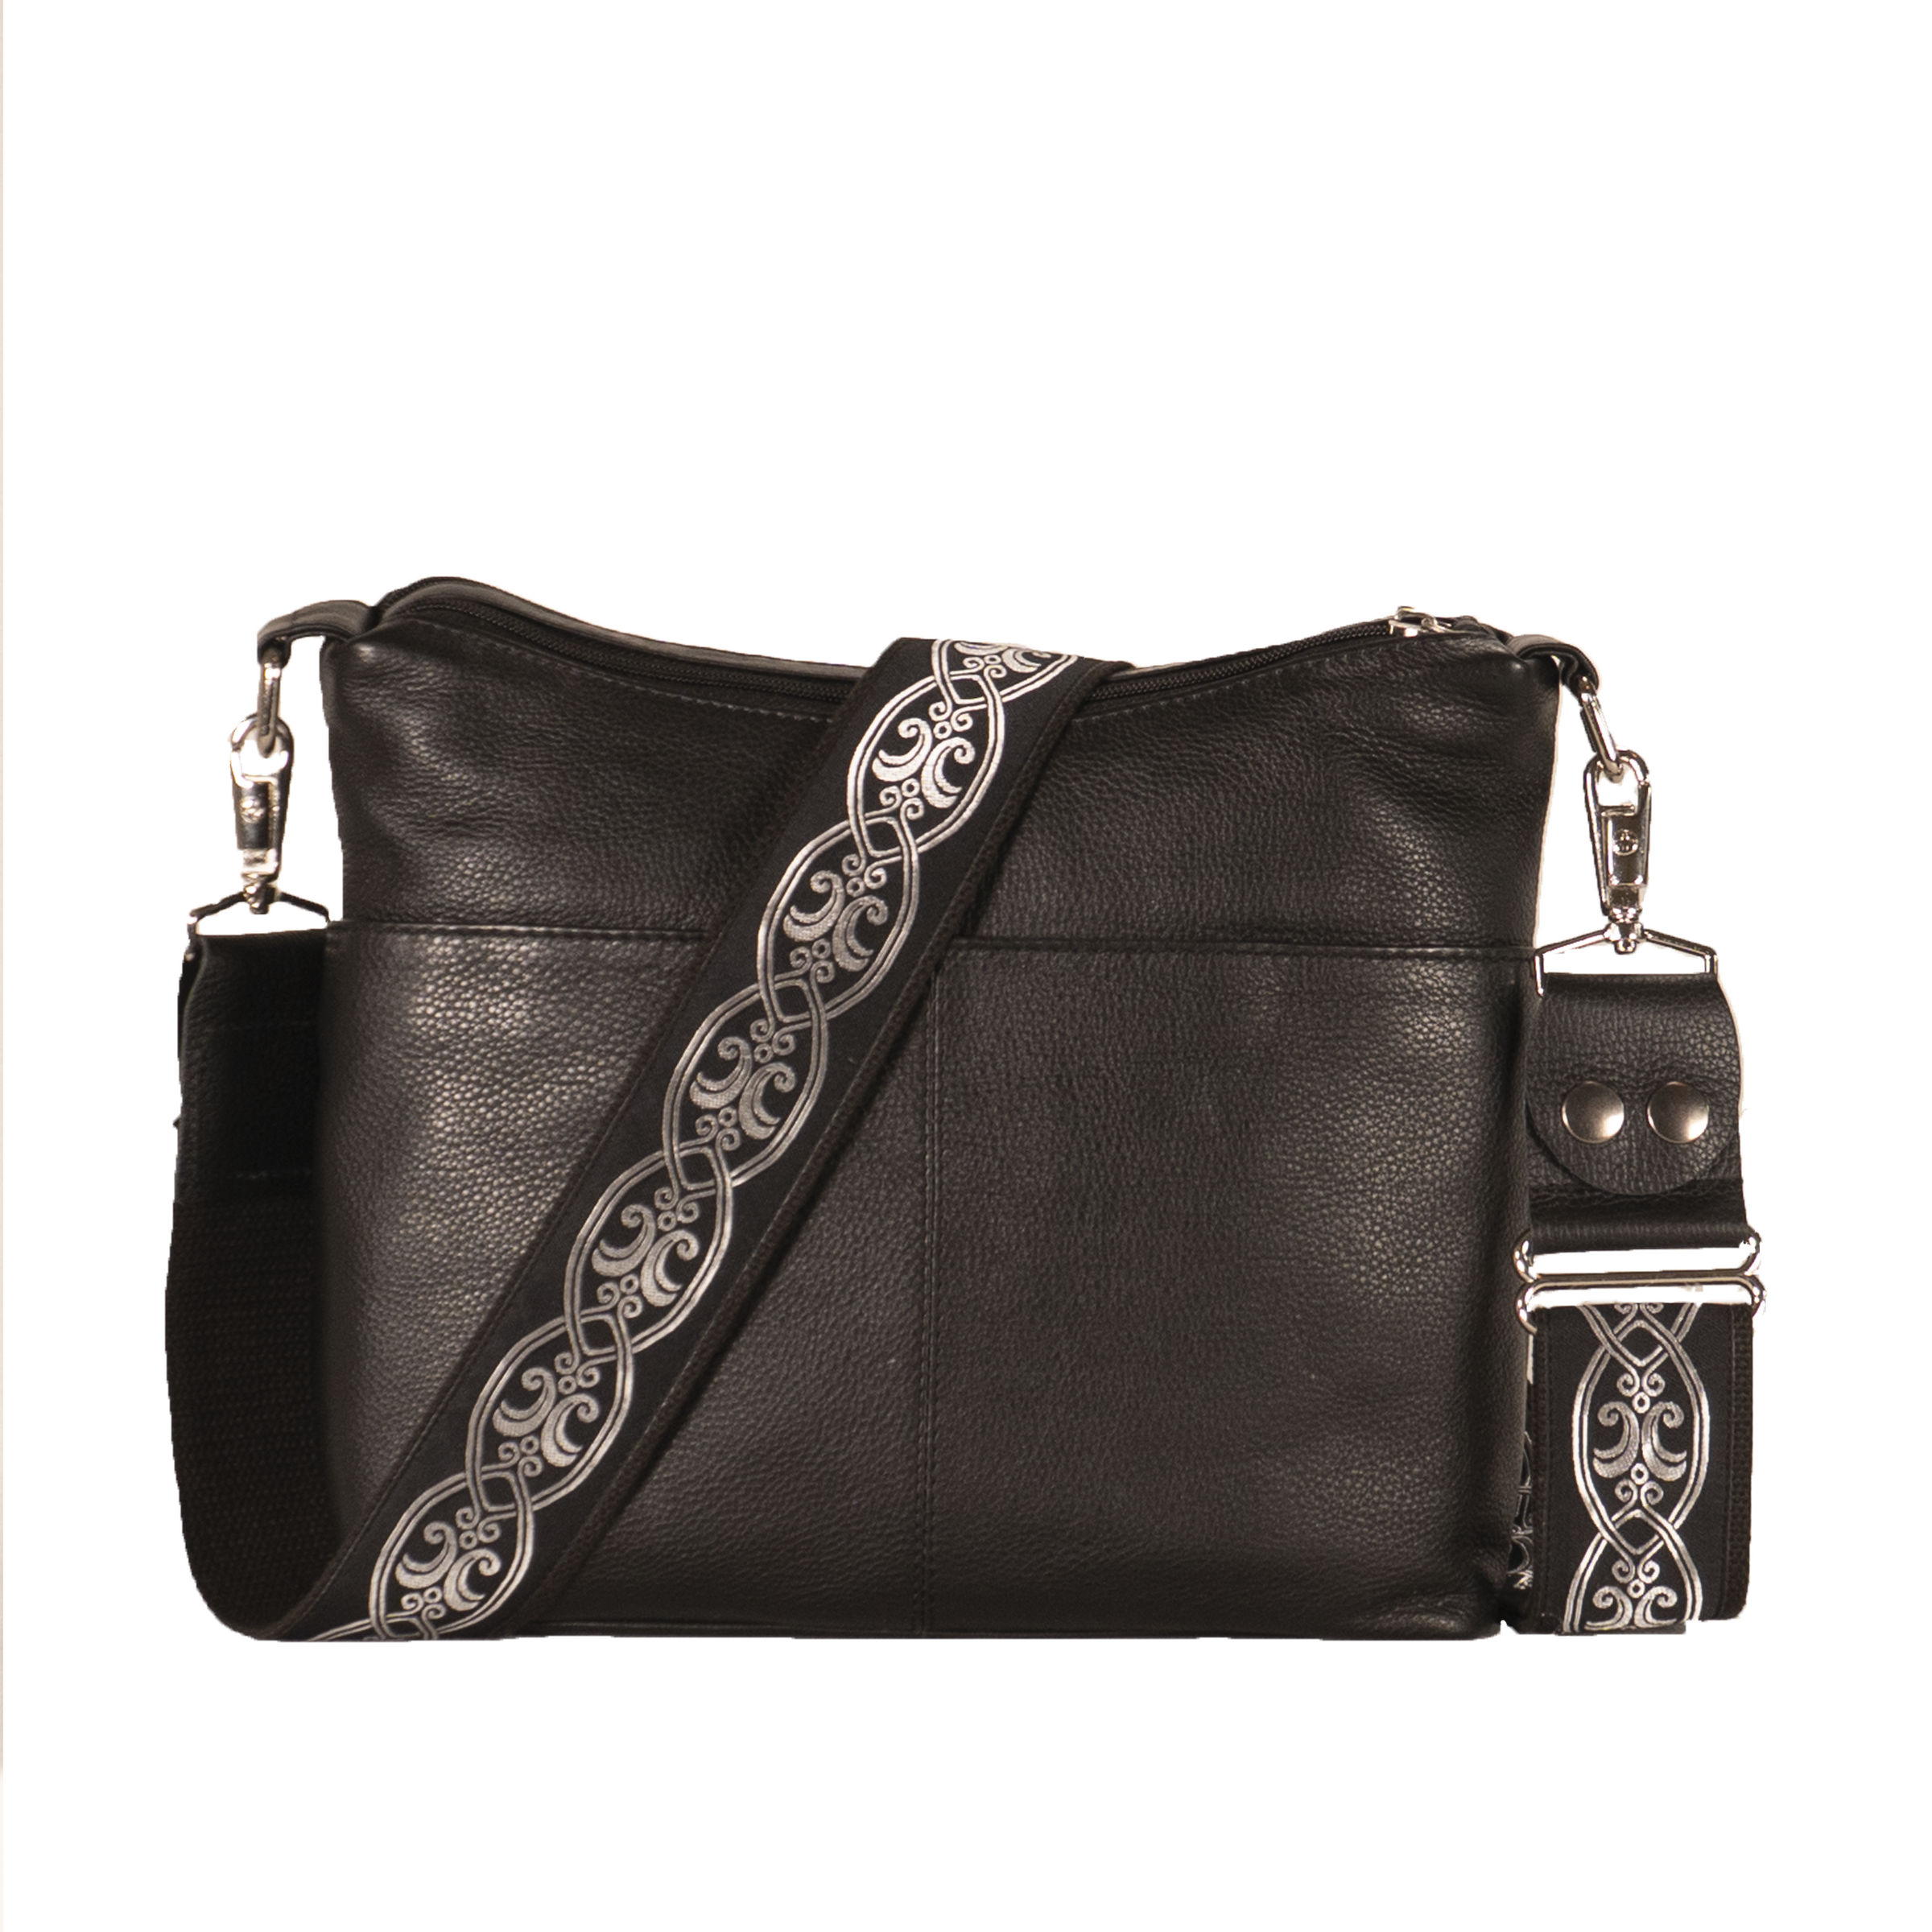 Handbag Strap Pad for Designer Trendy Bags Glazed Sides Fits 